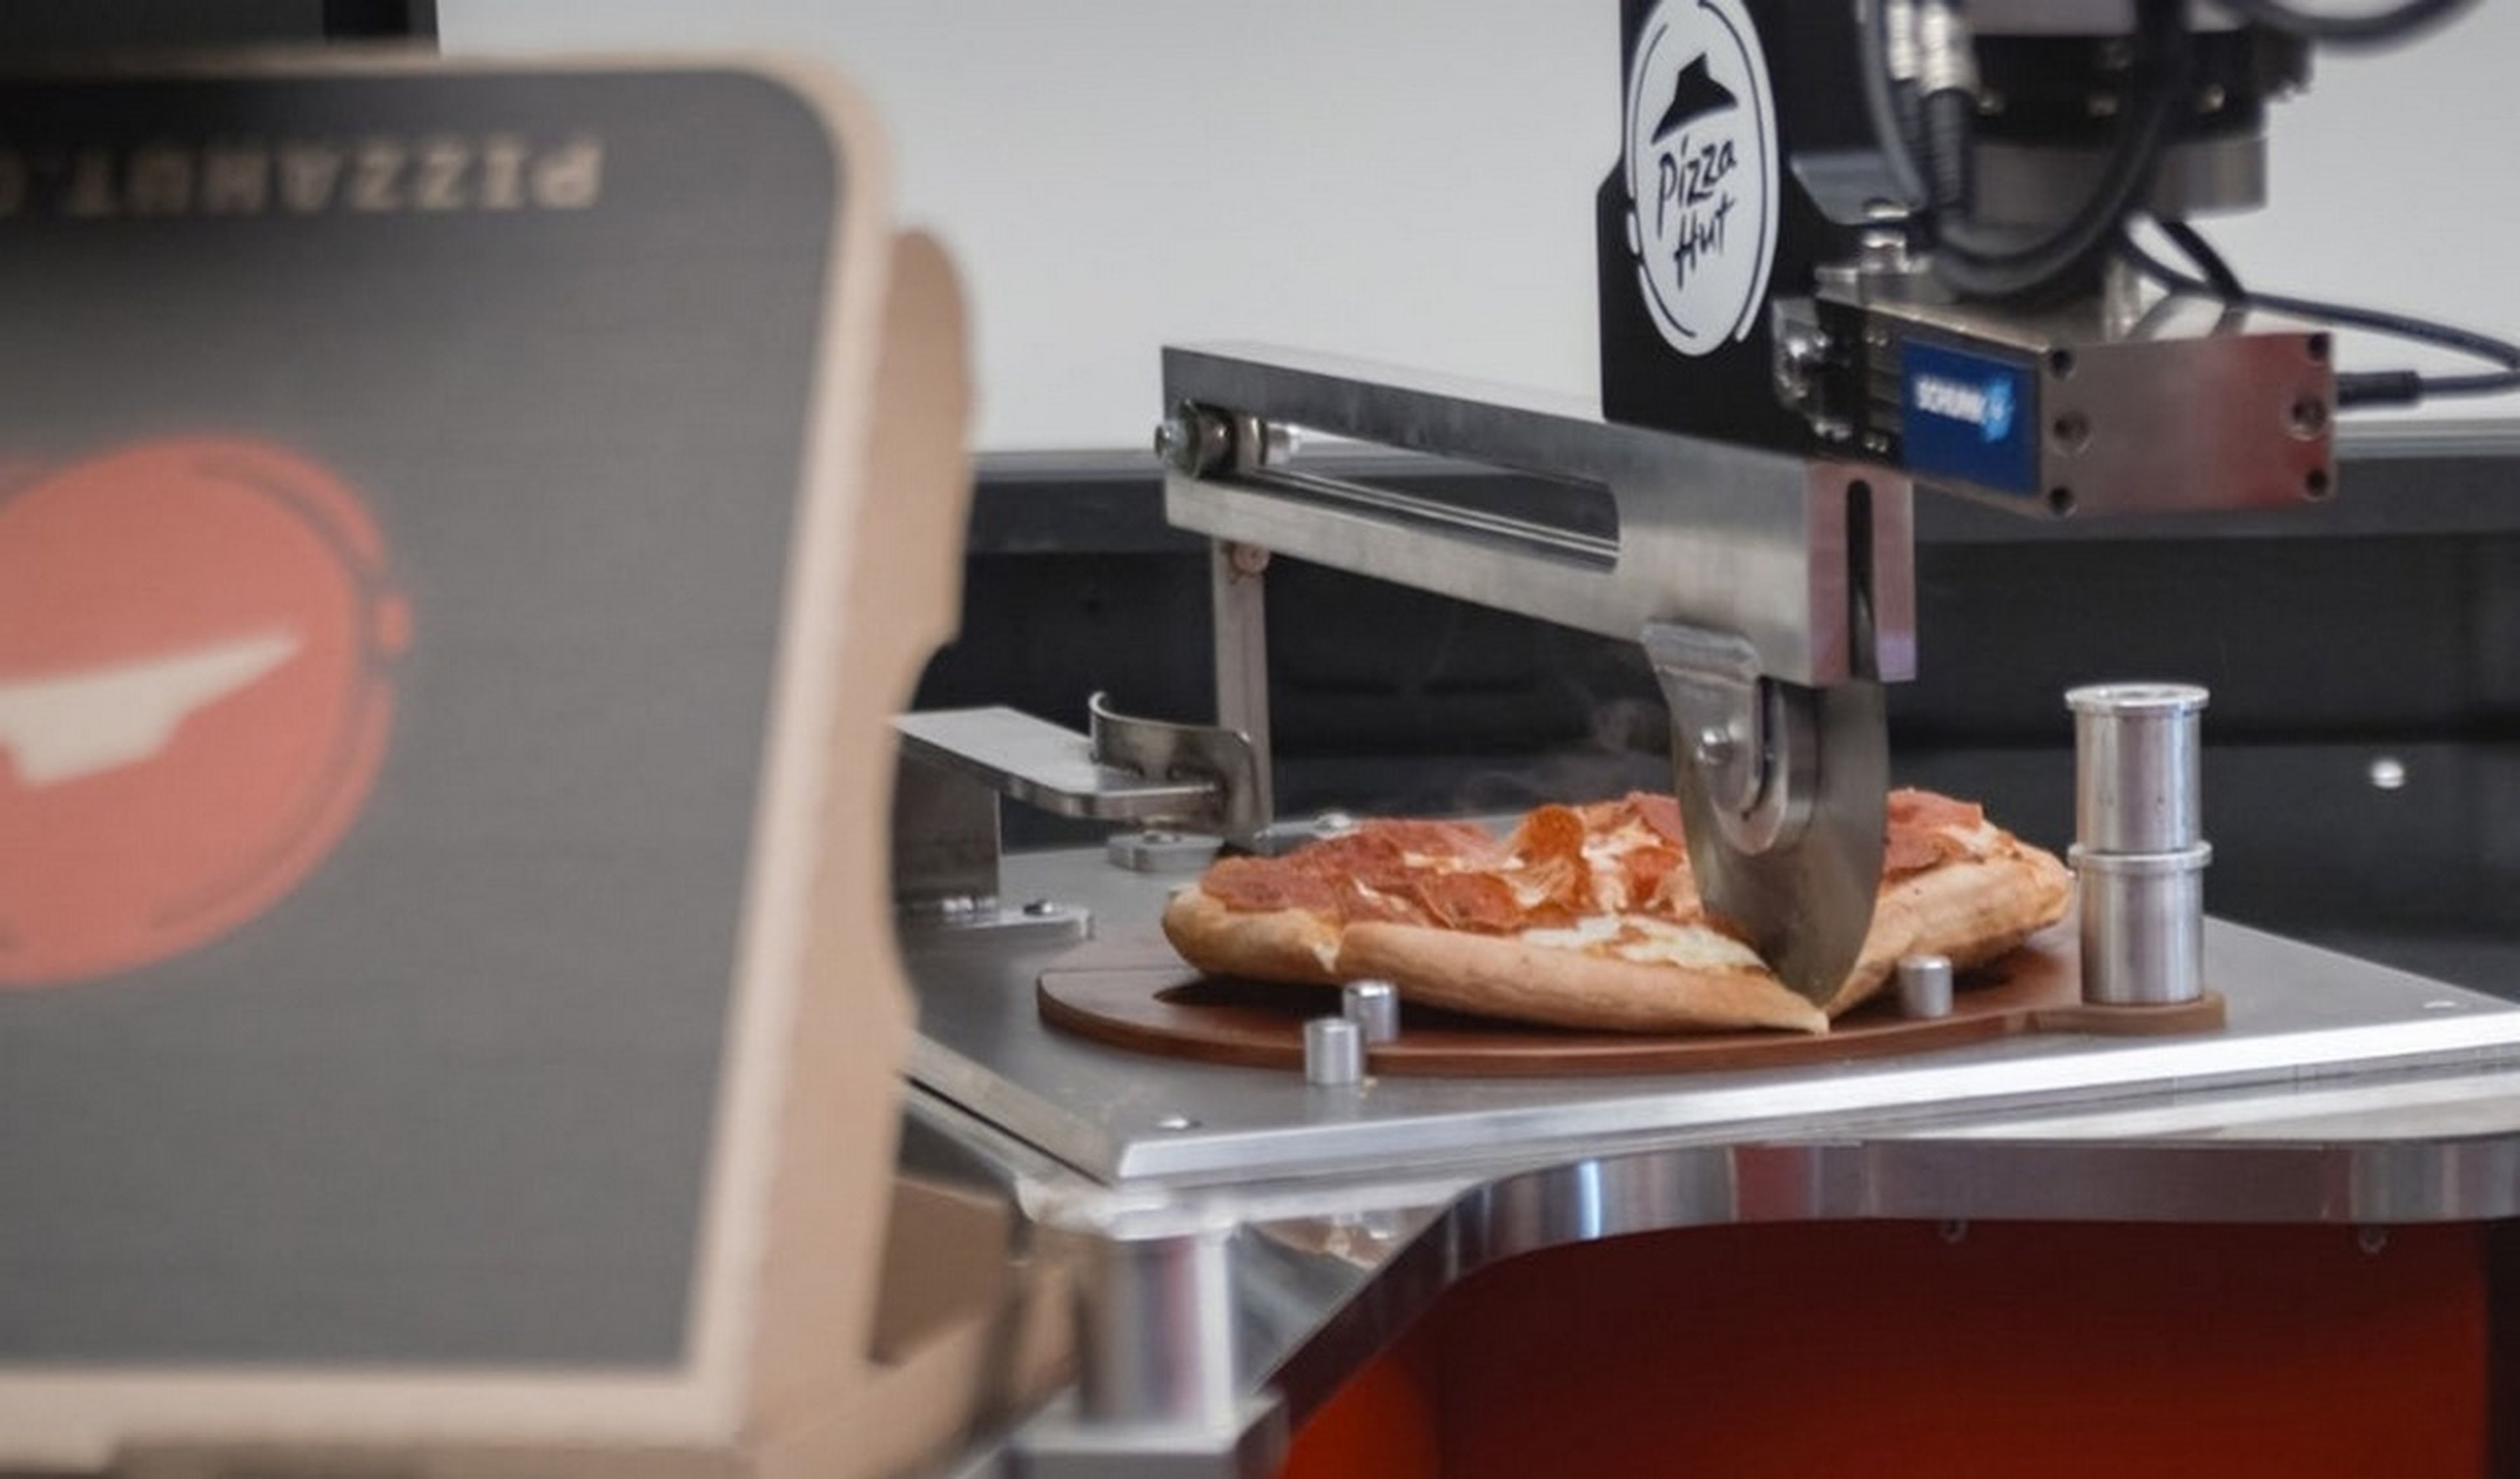 El Toyota Tundra Pie Pro tiene un robot en el remolque que cocina pizzas